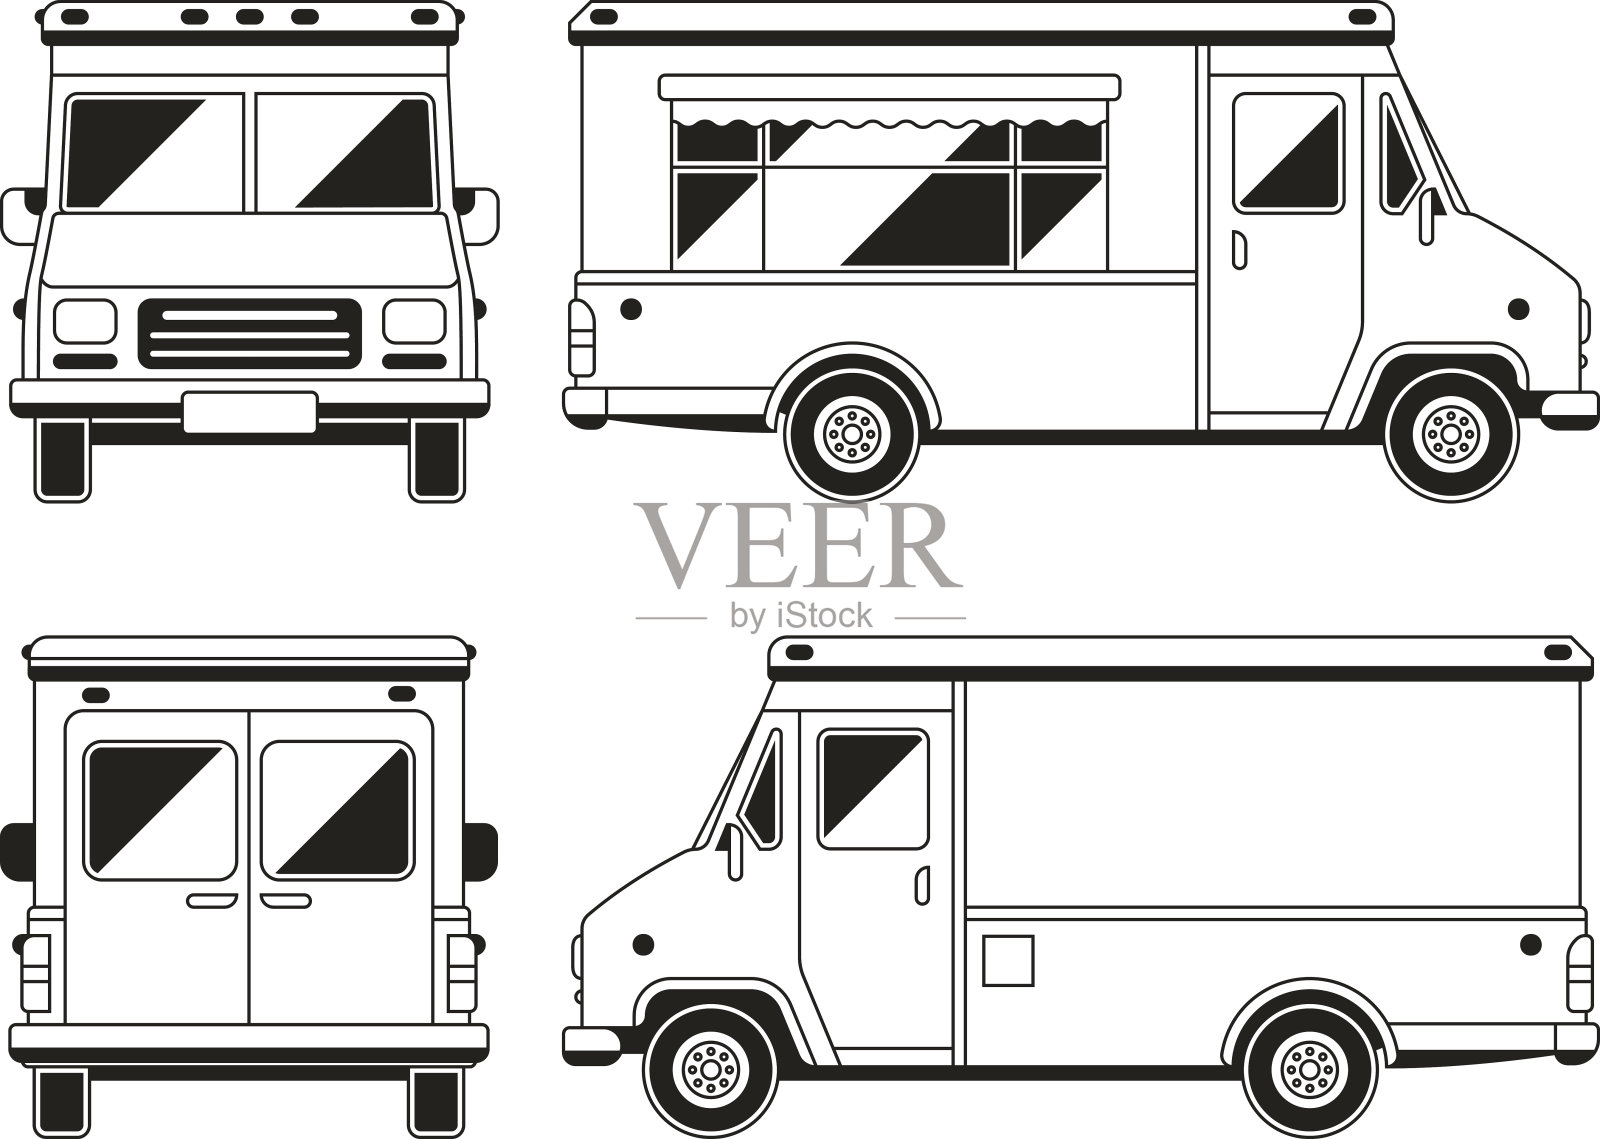 空白的商业餐车在不同的角度。轮廓矢量模板为您做广告插画图片素材